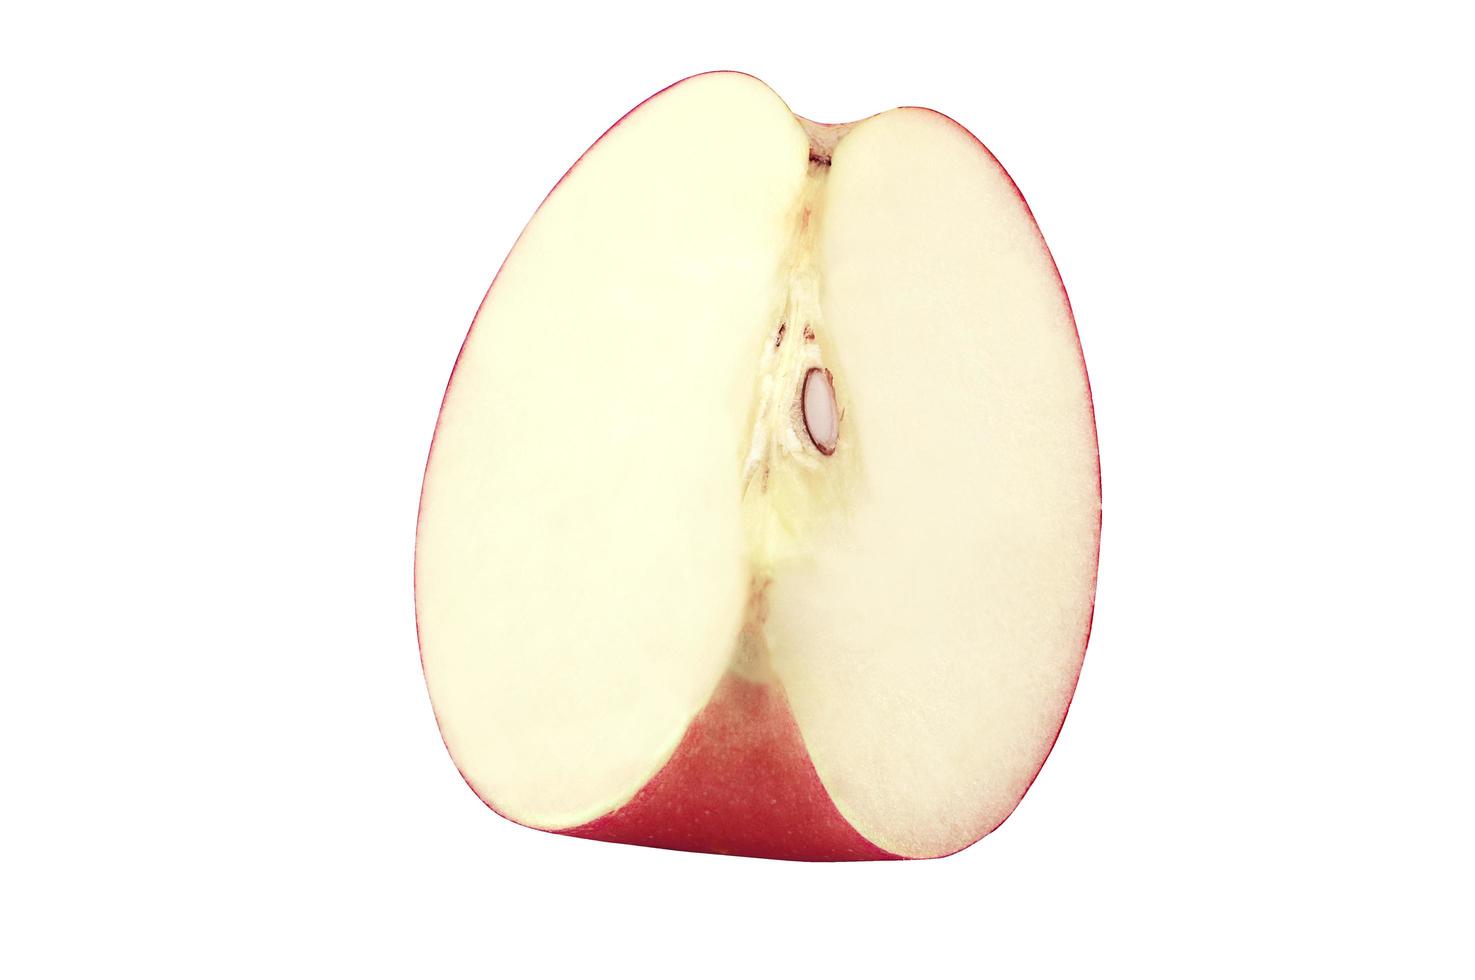 maçã fresca isolada no fundo branco com traçado de recorte. foto